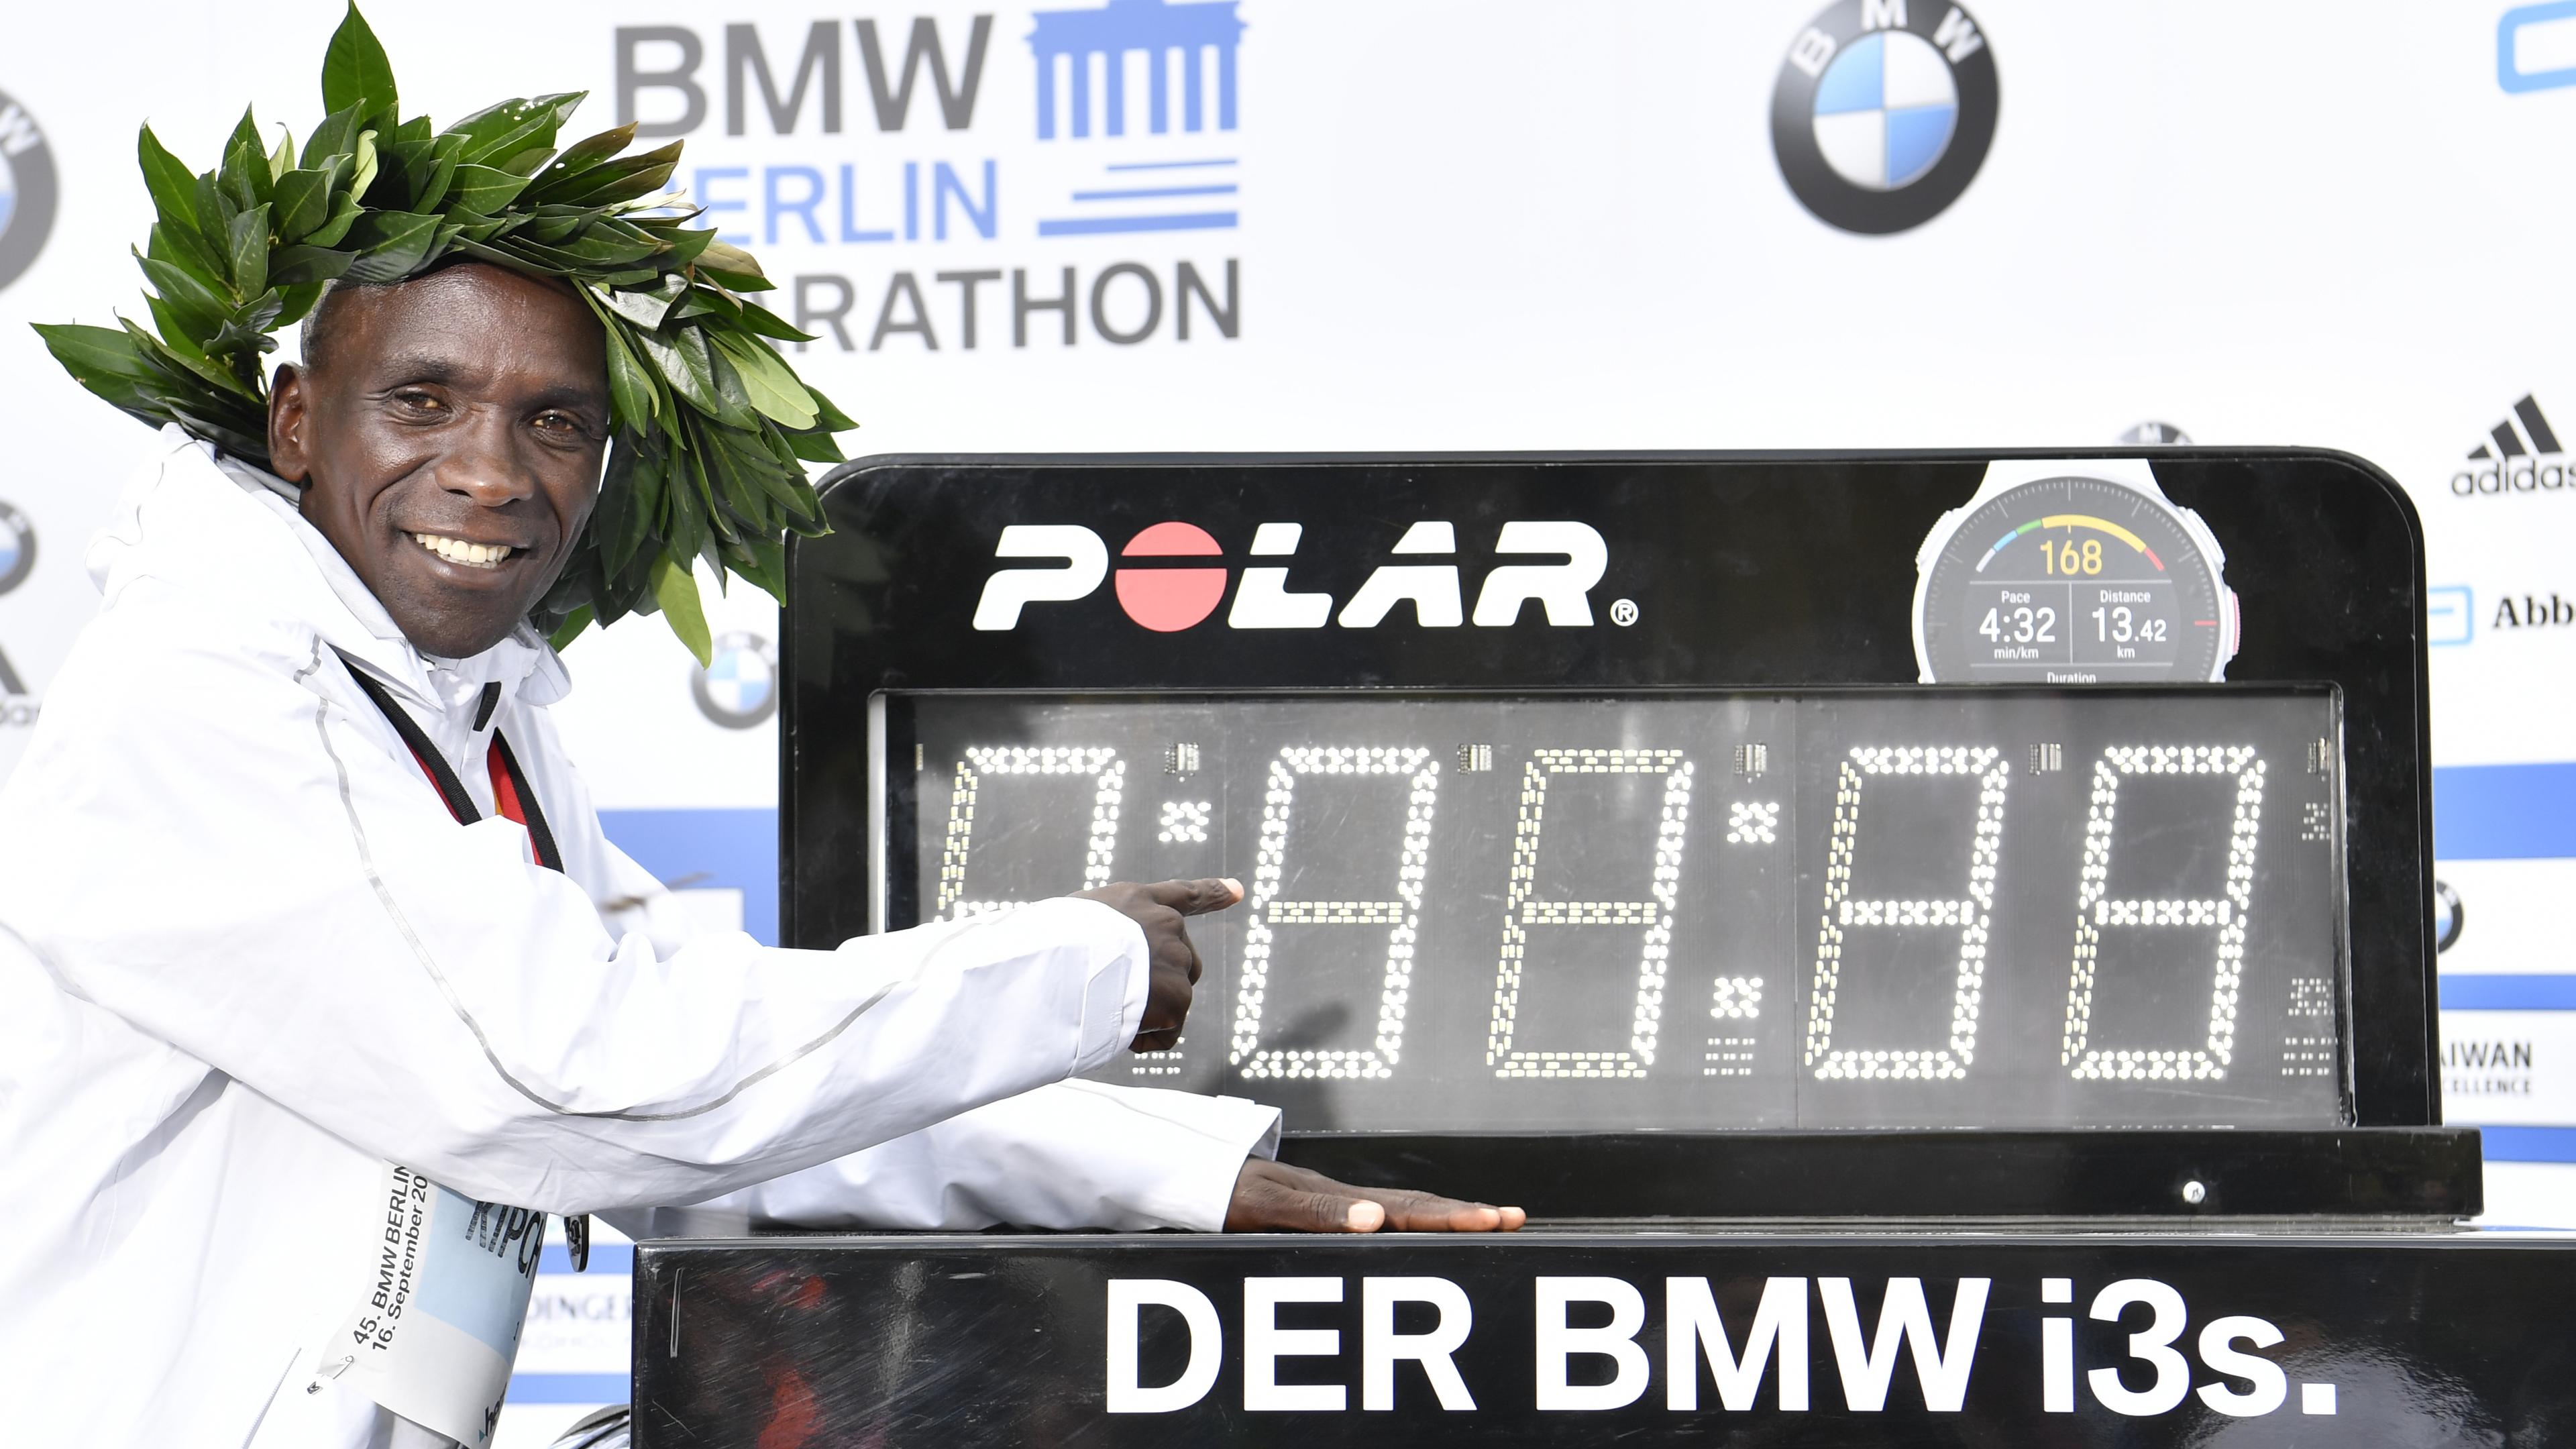 Elijud Kipčoge postavio novi svjetski rekord u maratonu